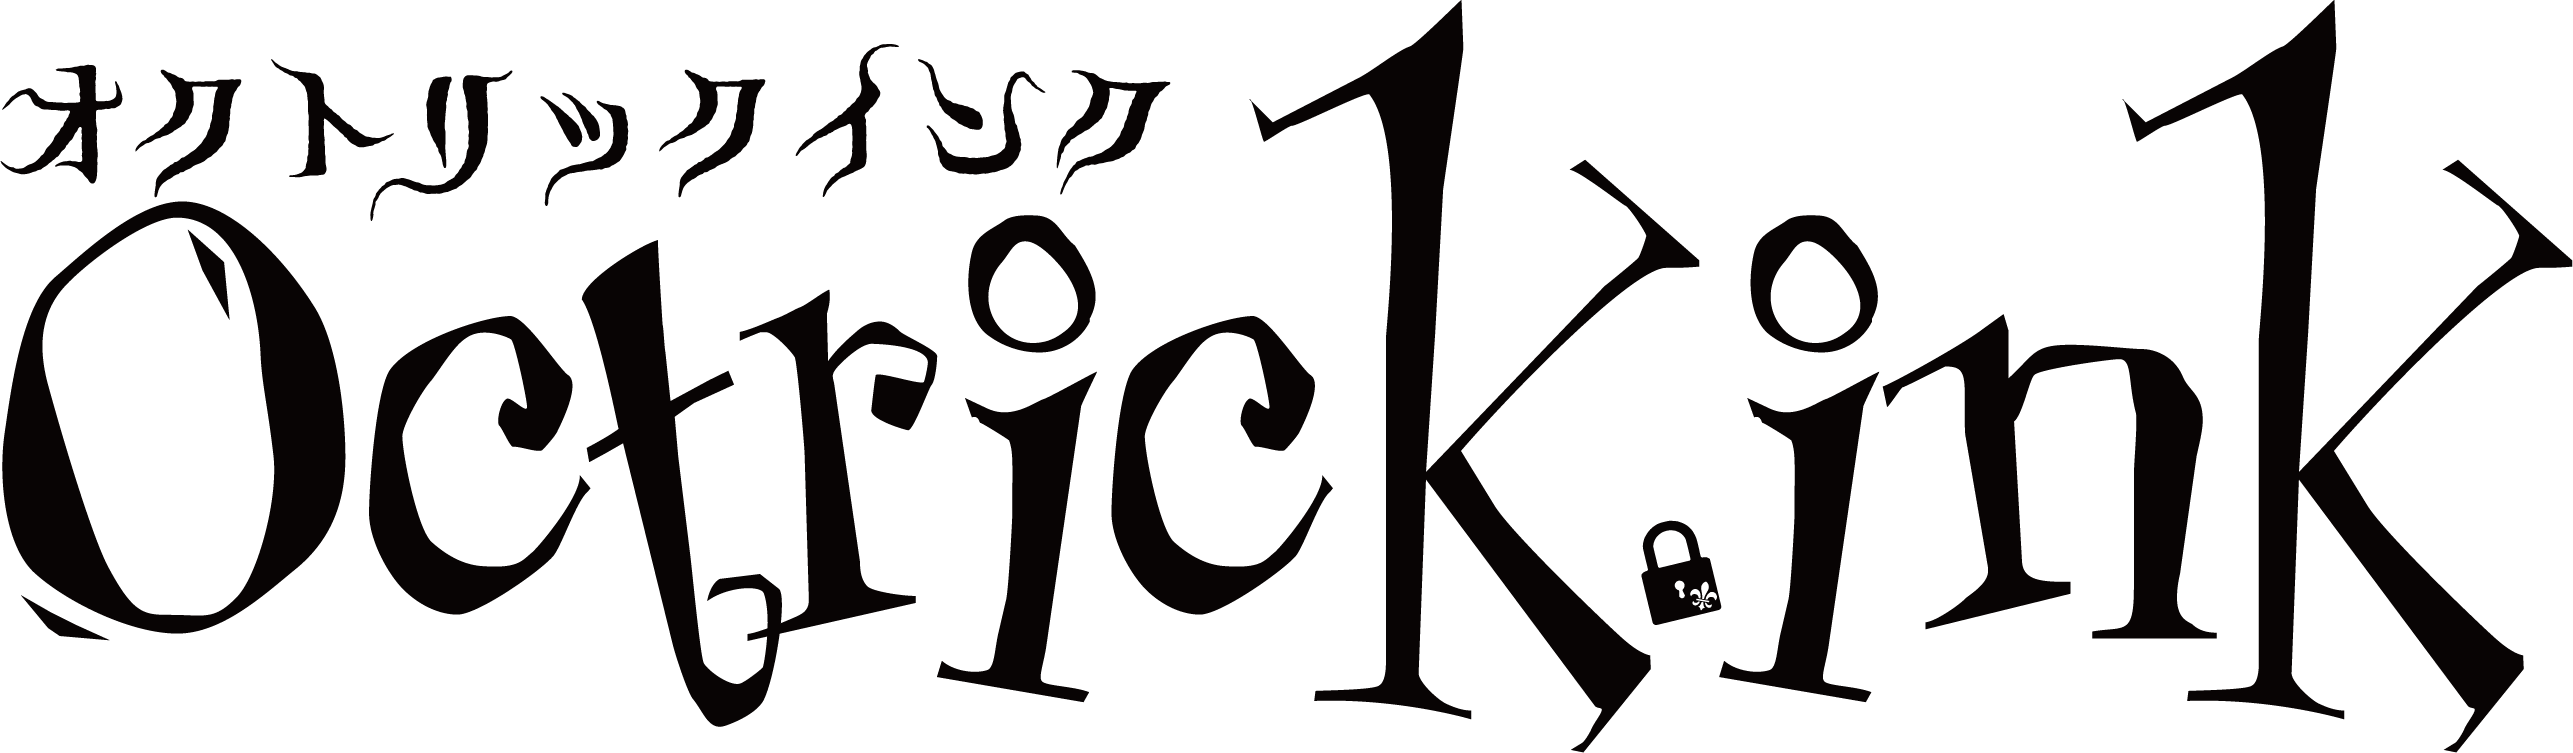 Octrick.ink